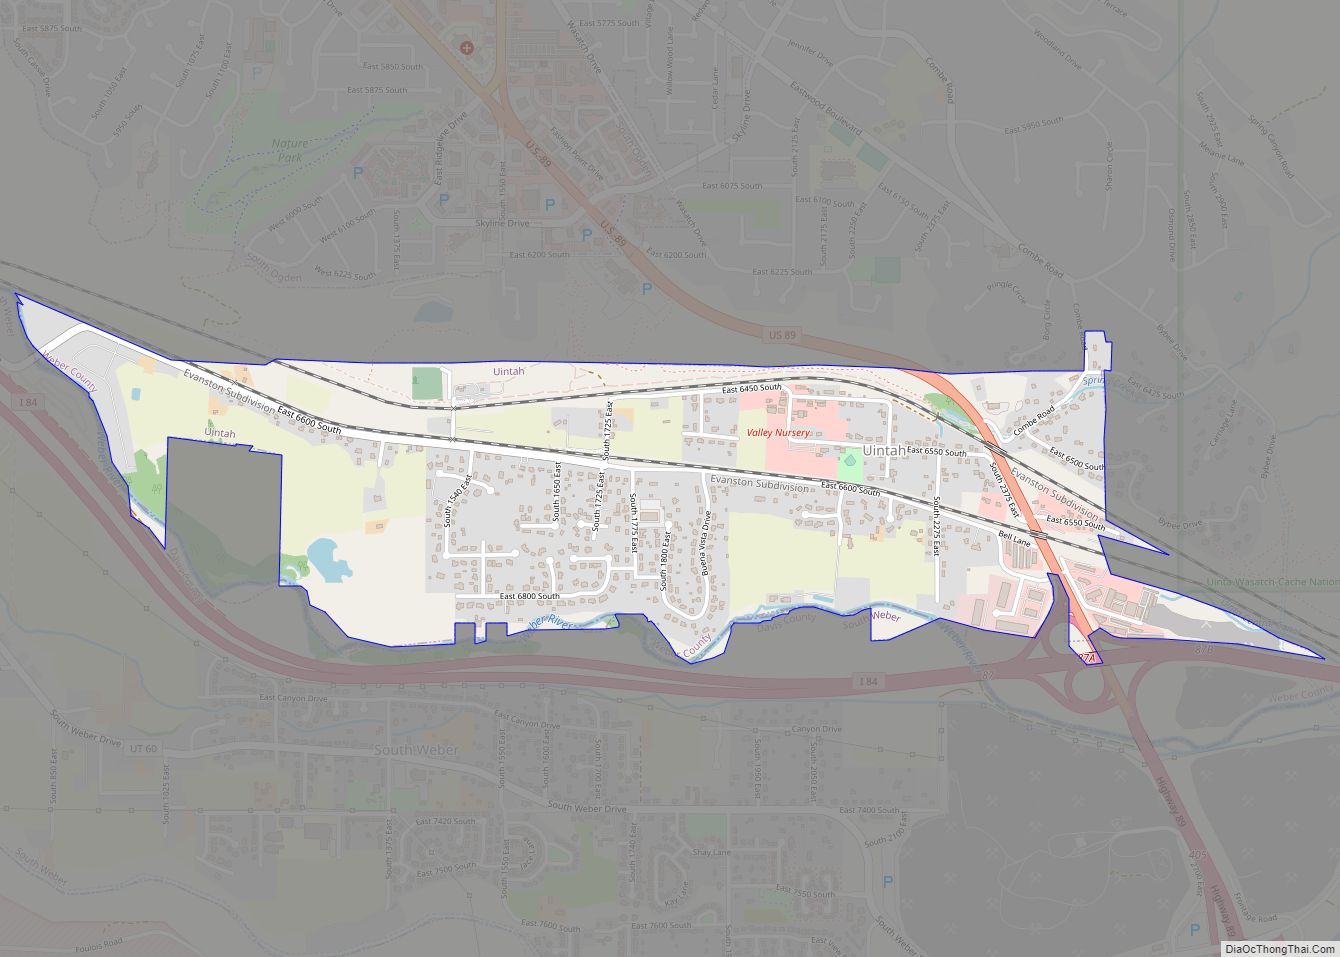 Map of Uintah town